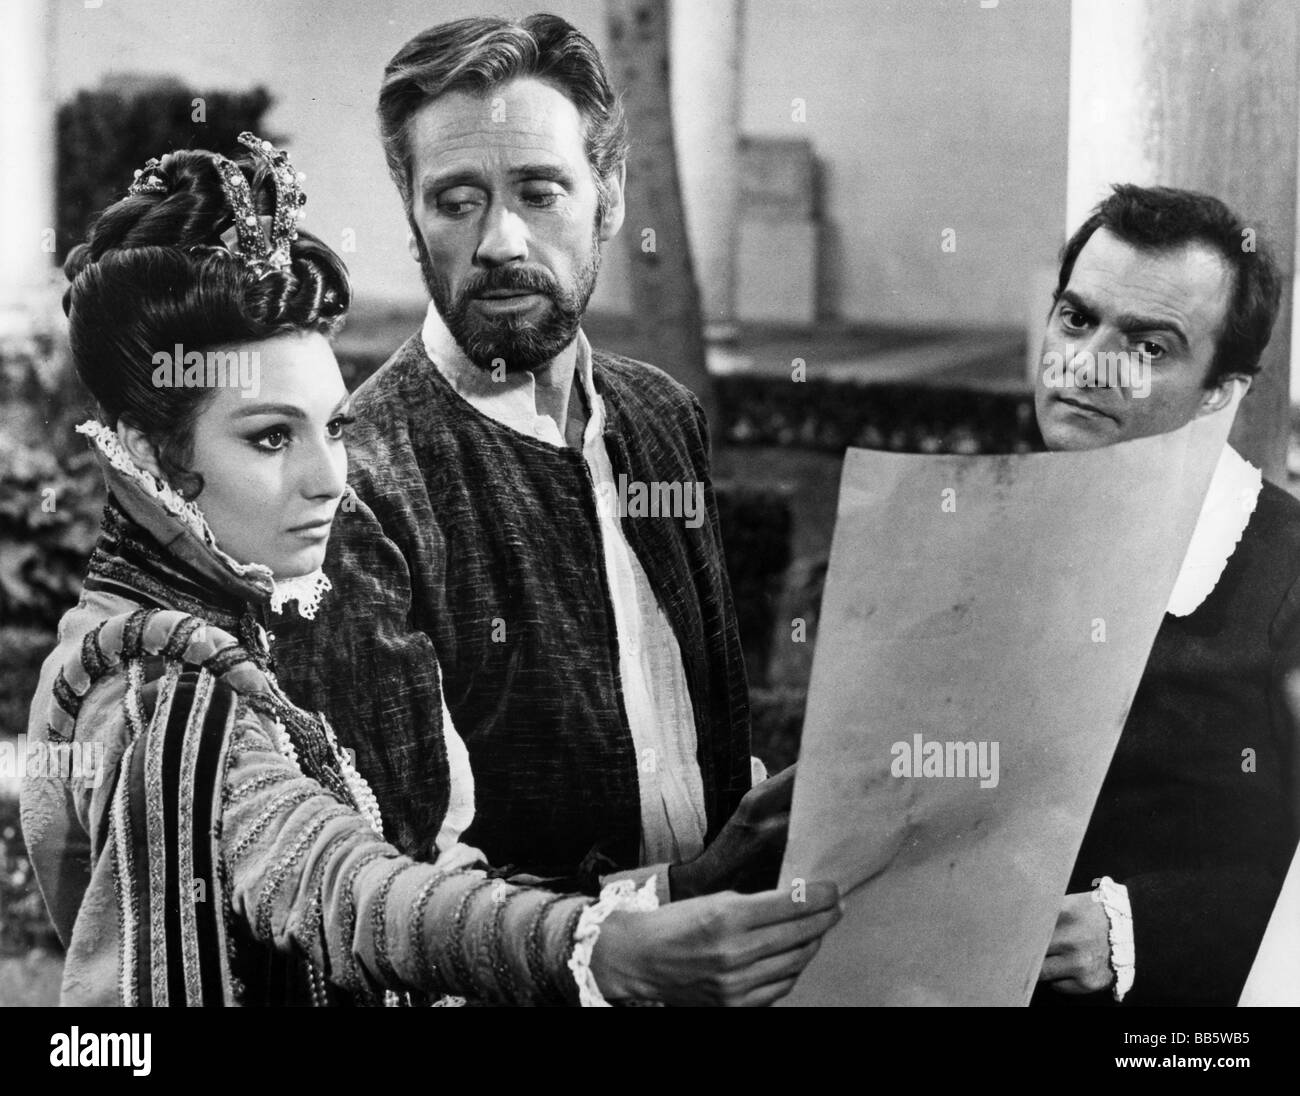 movie, 'El Greco', ESP/ITA/FRA 1966, director: Luciano Salce, scene with: Rosanna Schiaffino, Mel Ferrer (El Greco), Franco Giacobini, Third-Party-Permissions-Neccessary Stock Photo